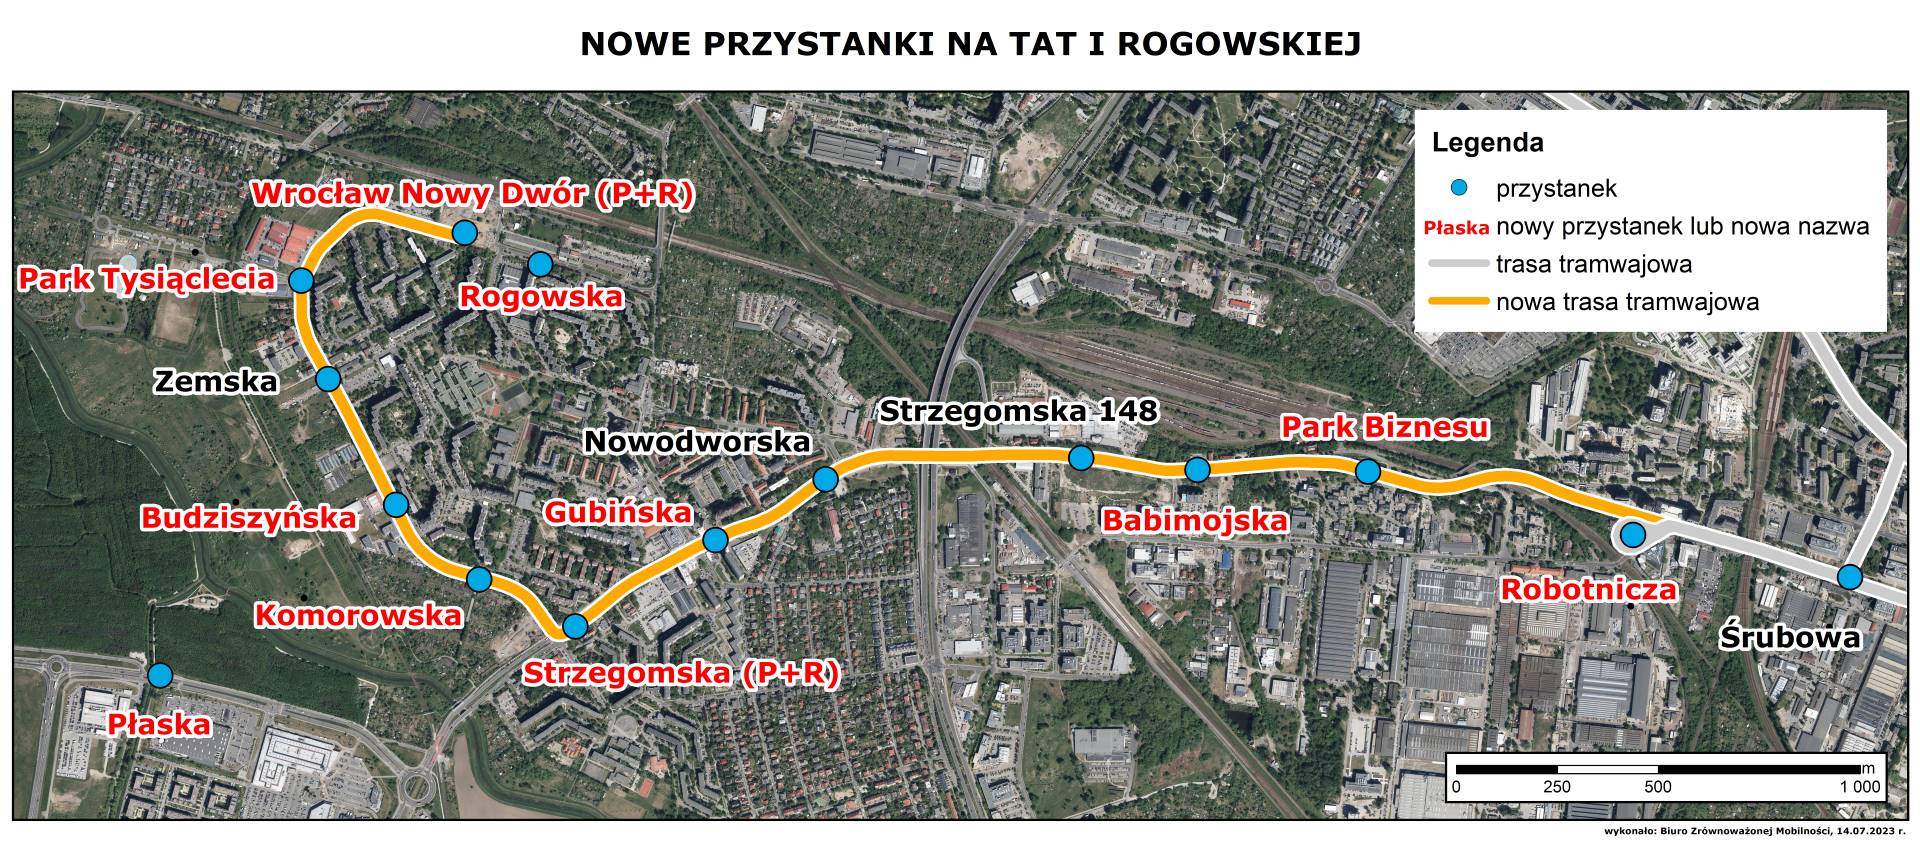 Powiększ obraz: Mapa przedstawia lokalizację oraz nazwy przystanków na trasie na Nowy Dwór.